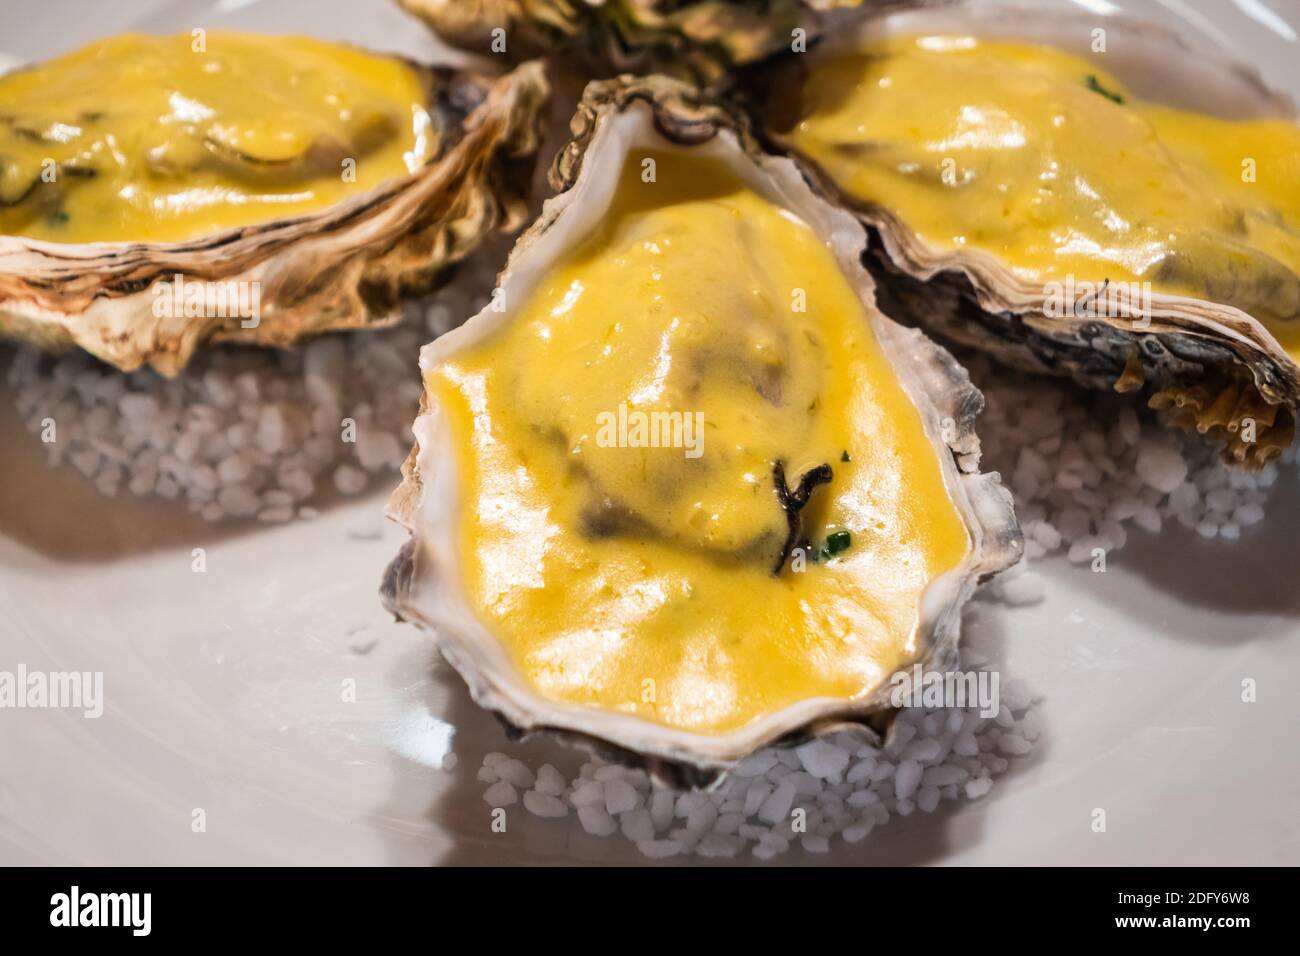 Les huîtres Rockefeller rôdu en deux doivent être sur une assiette blanche, un plat typique de la cuisine de la Nouvelle-Orléans Banque D'Images